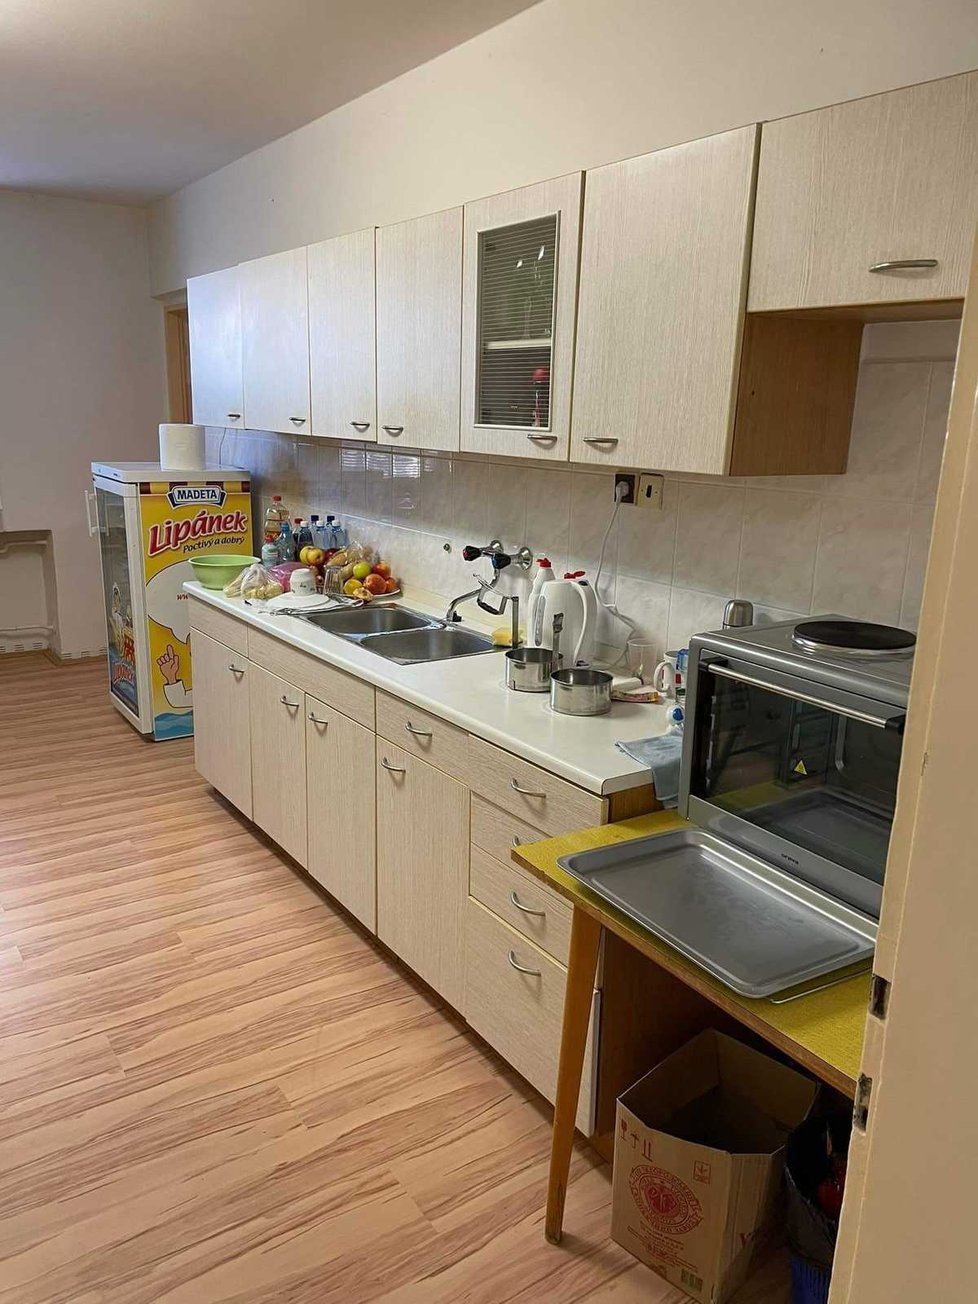 Školní byt disponuje dvěma ložnicemi a kuchyní.